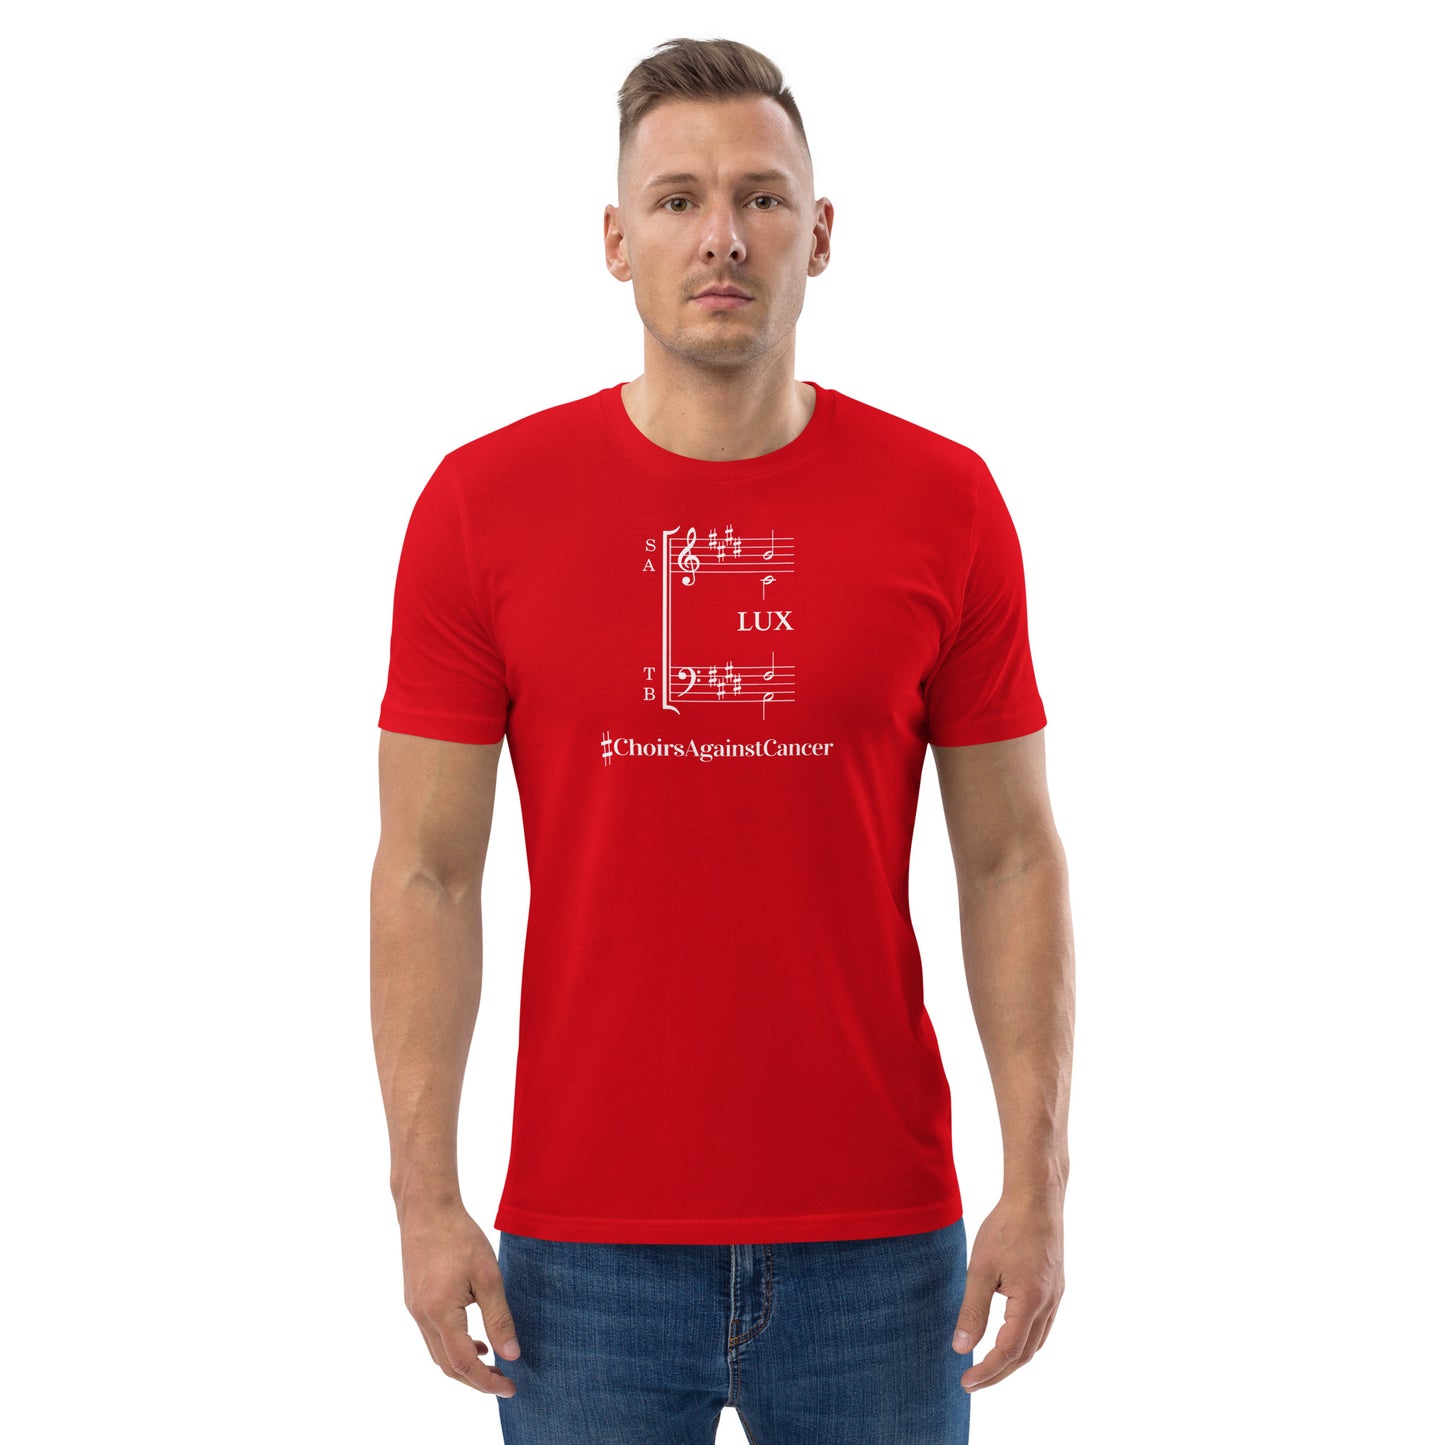 #ChoirsAgainstCancer Lux - Charity Unisex T-shirt